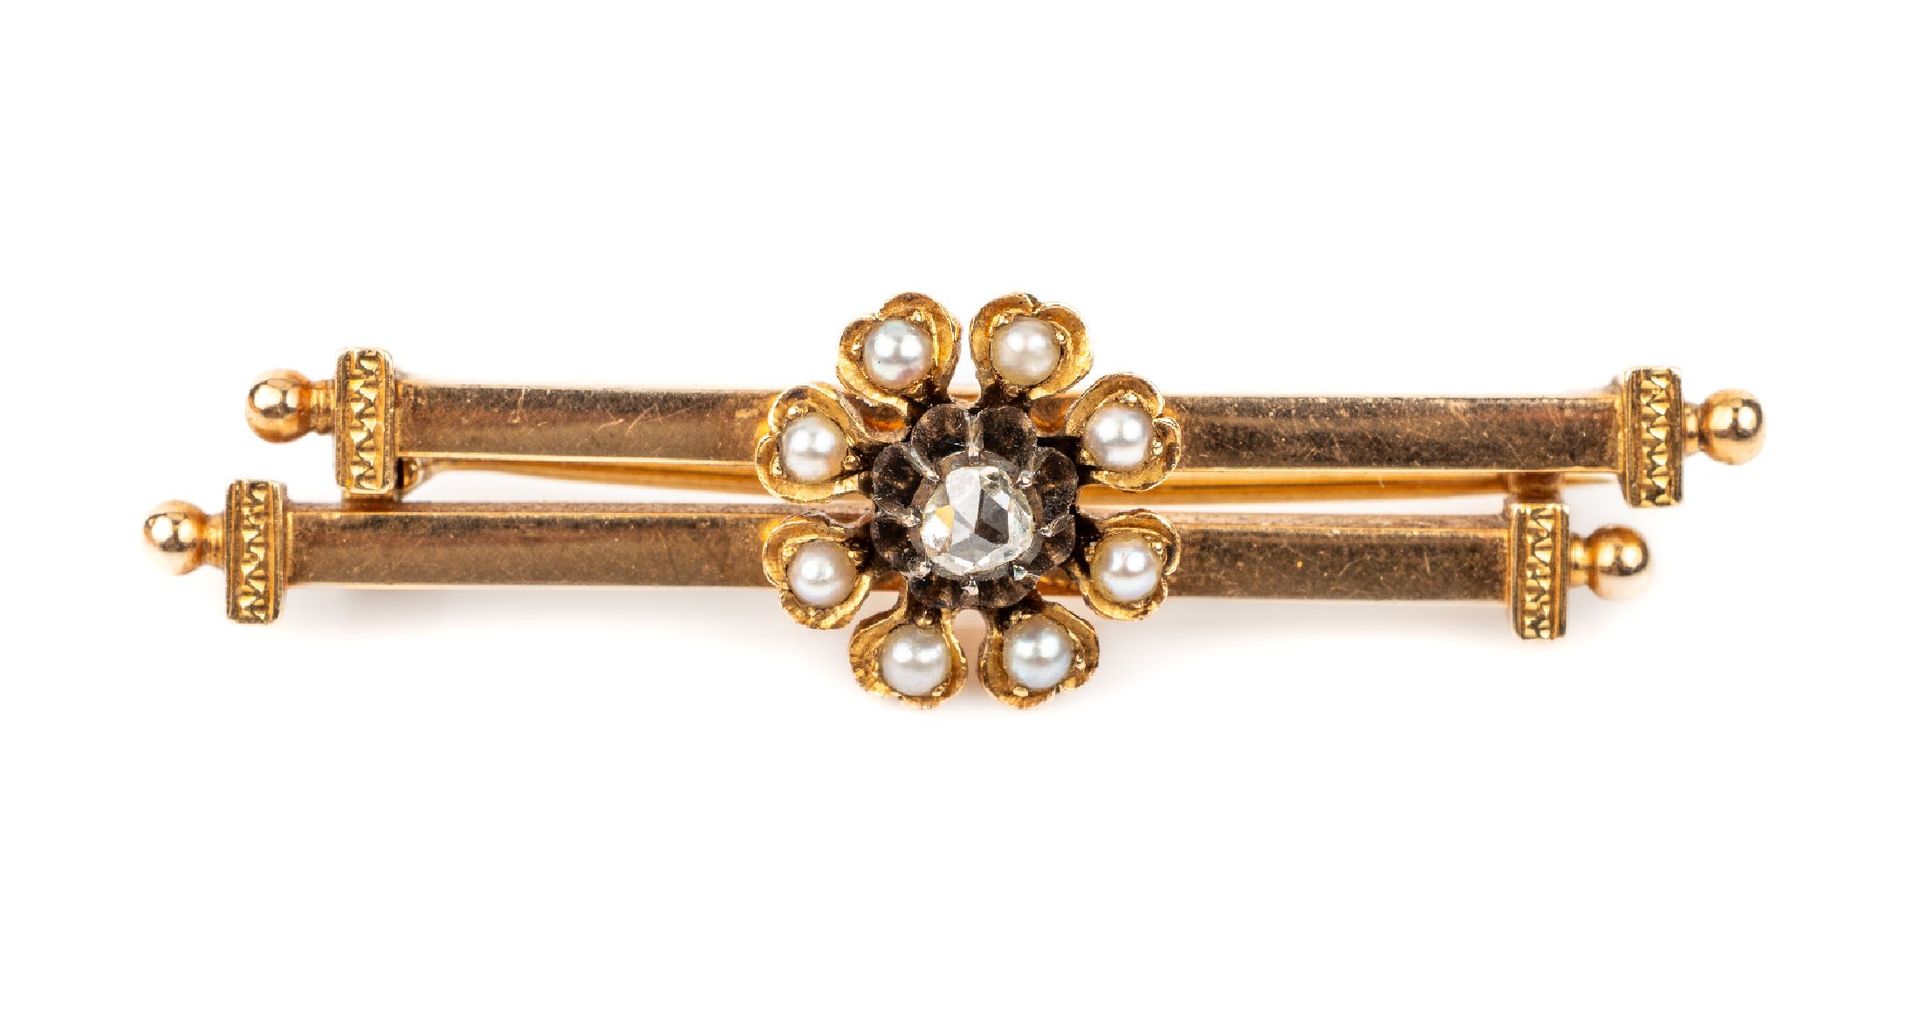 Null 14K金钻石珠胸针，约1880年，GG 585/000印记，2根拉长条形饰带，饰带小钻石玫瑰和小河珠，长约4.5厘米，重约4.2克